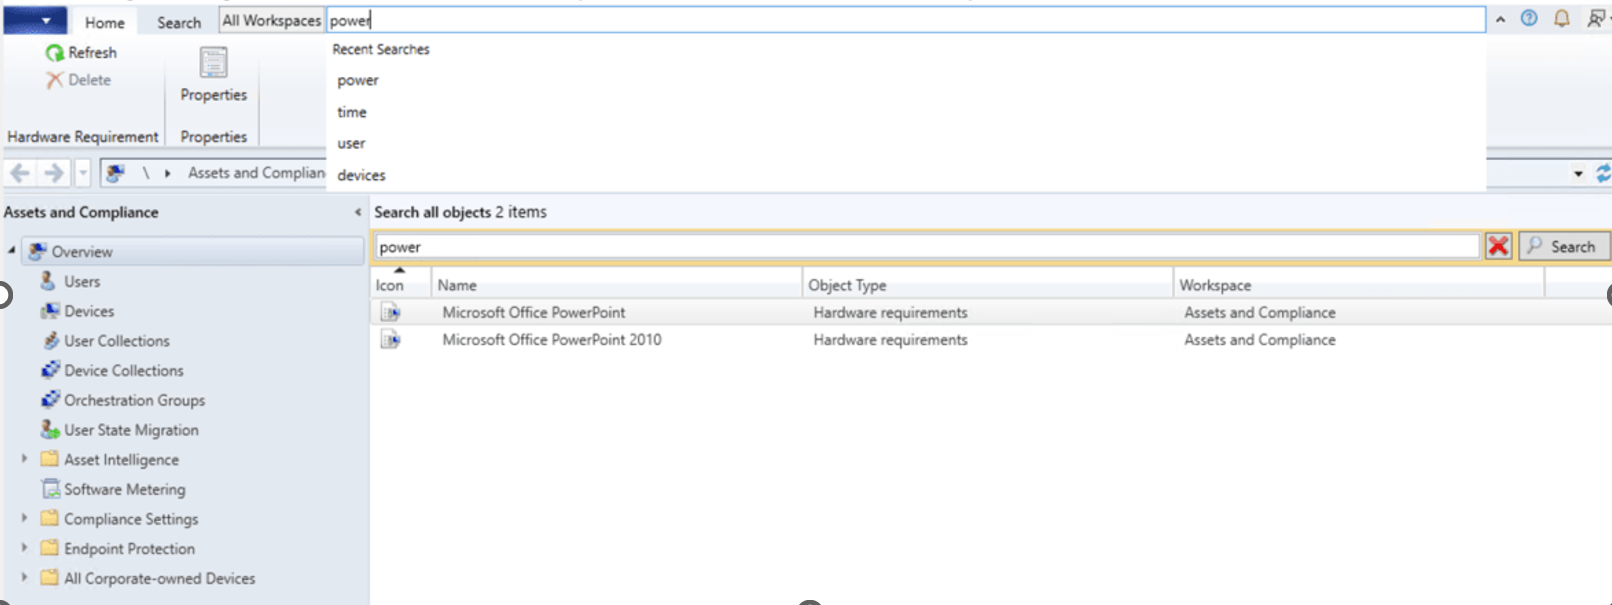 Captura de pantalla que muestra la lista de búsquedas recientes del cuadro de búsqueda global en la consola de CM.